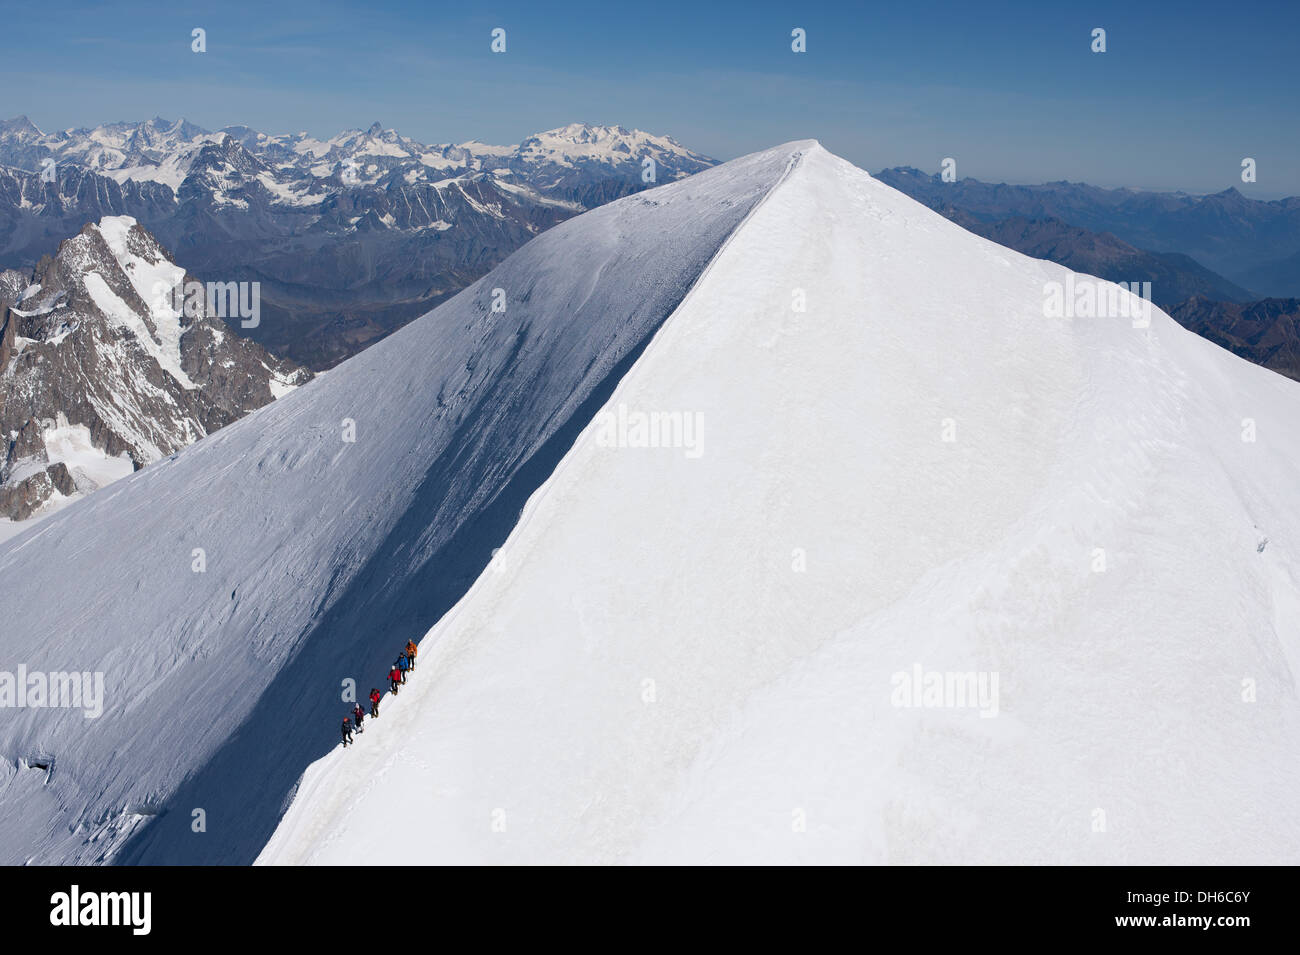 VUE AÉRIENNE.Mont blanc, le sommet le plus élevé d'Europe occidentale (4810m).6 alpinistes en randonnée sur la crête.Chamonix, haute-Savoie, France. Banque D'Images